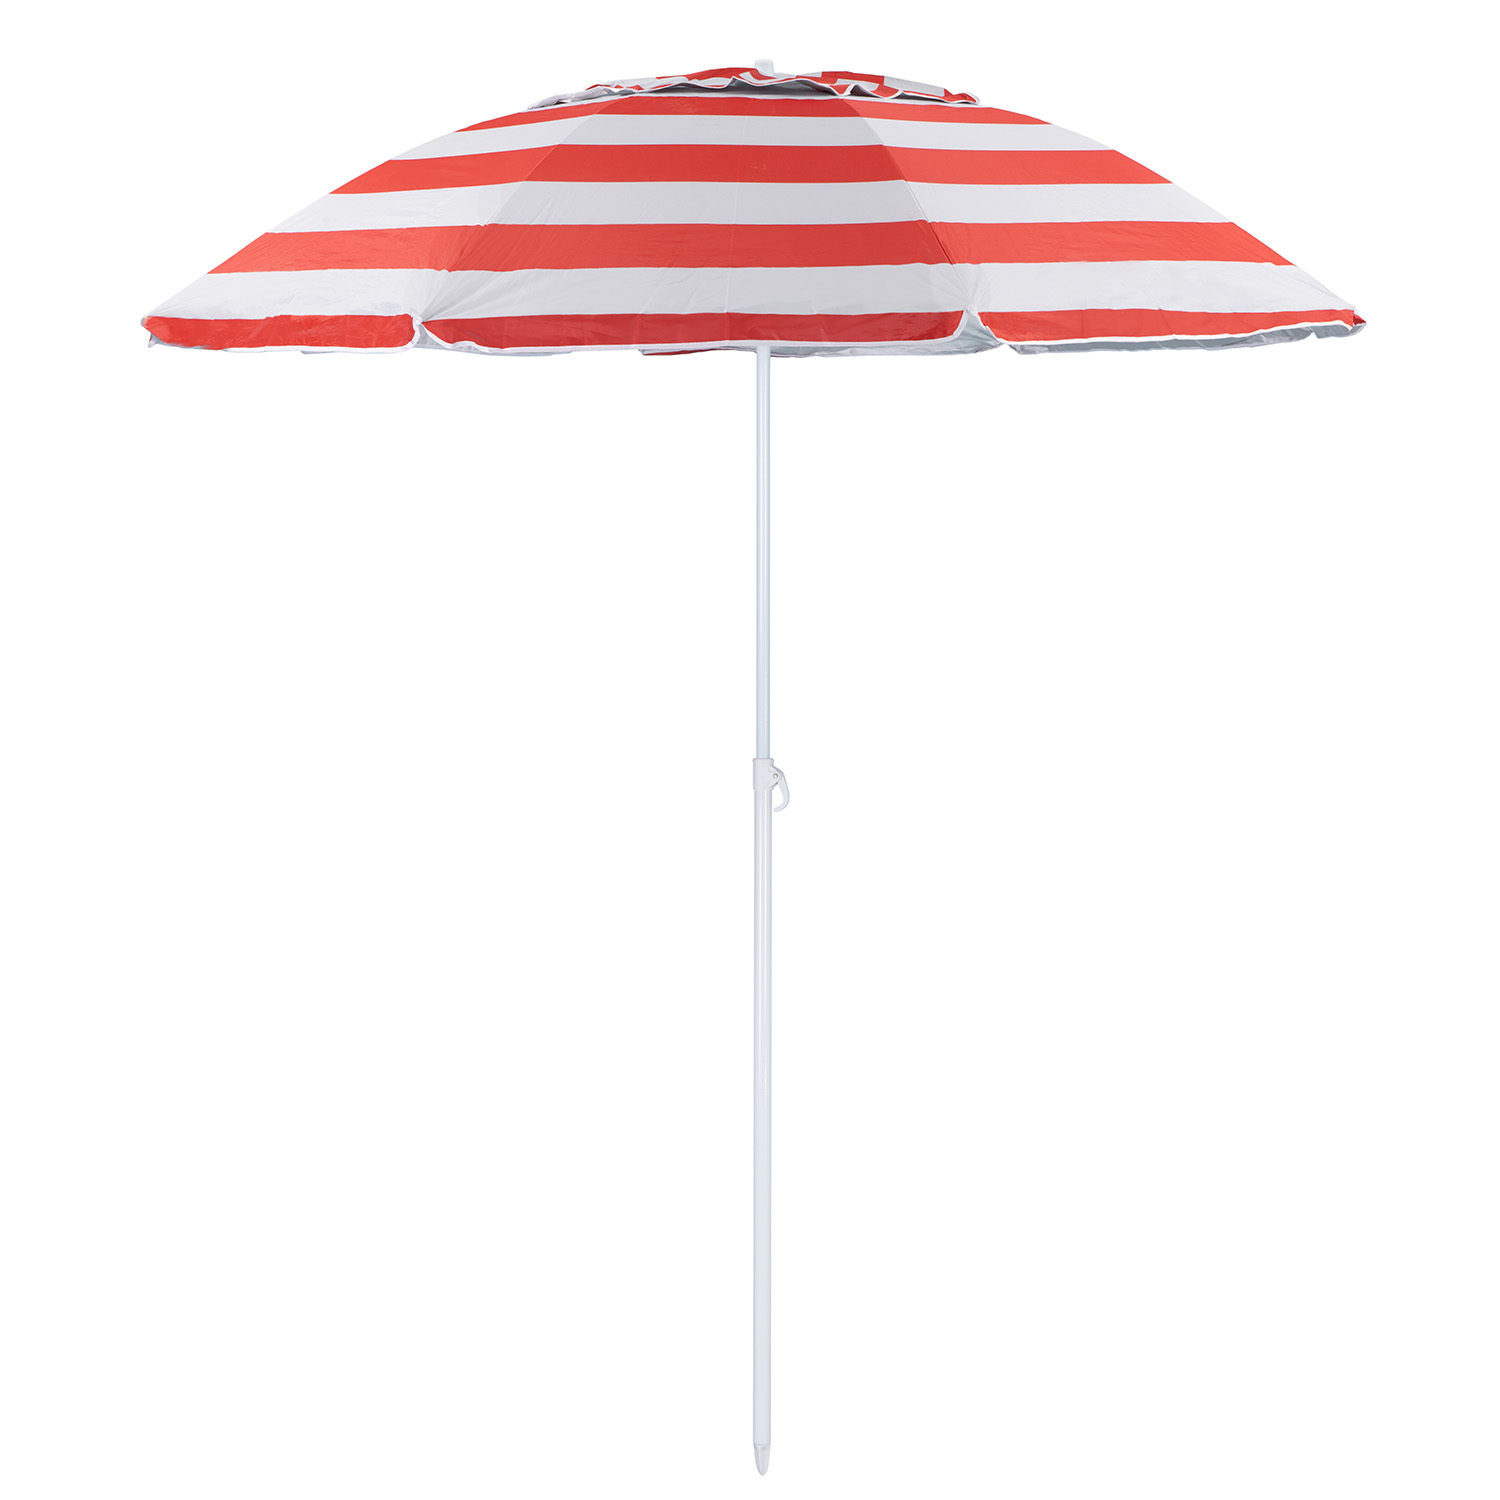 Зонт пляжный BABY STYLE солнцезащитный зонт большой садовый с клапаном 2.2 м красный - фото 1